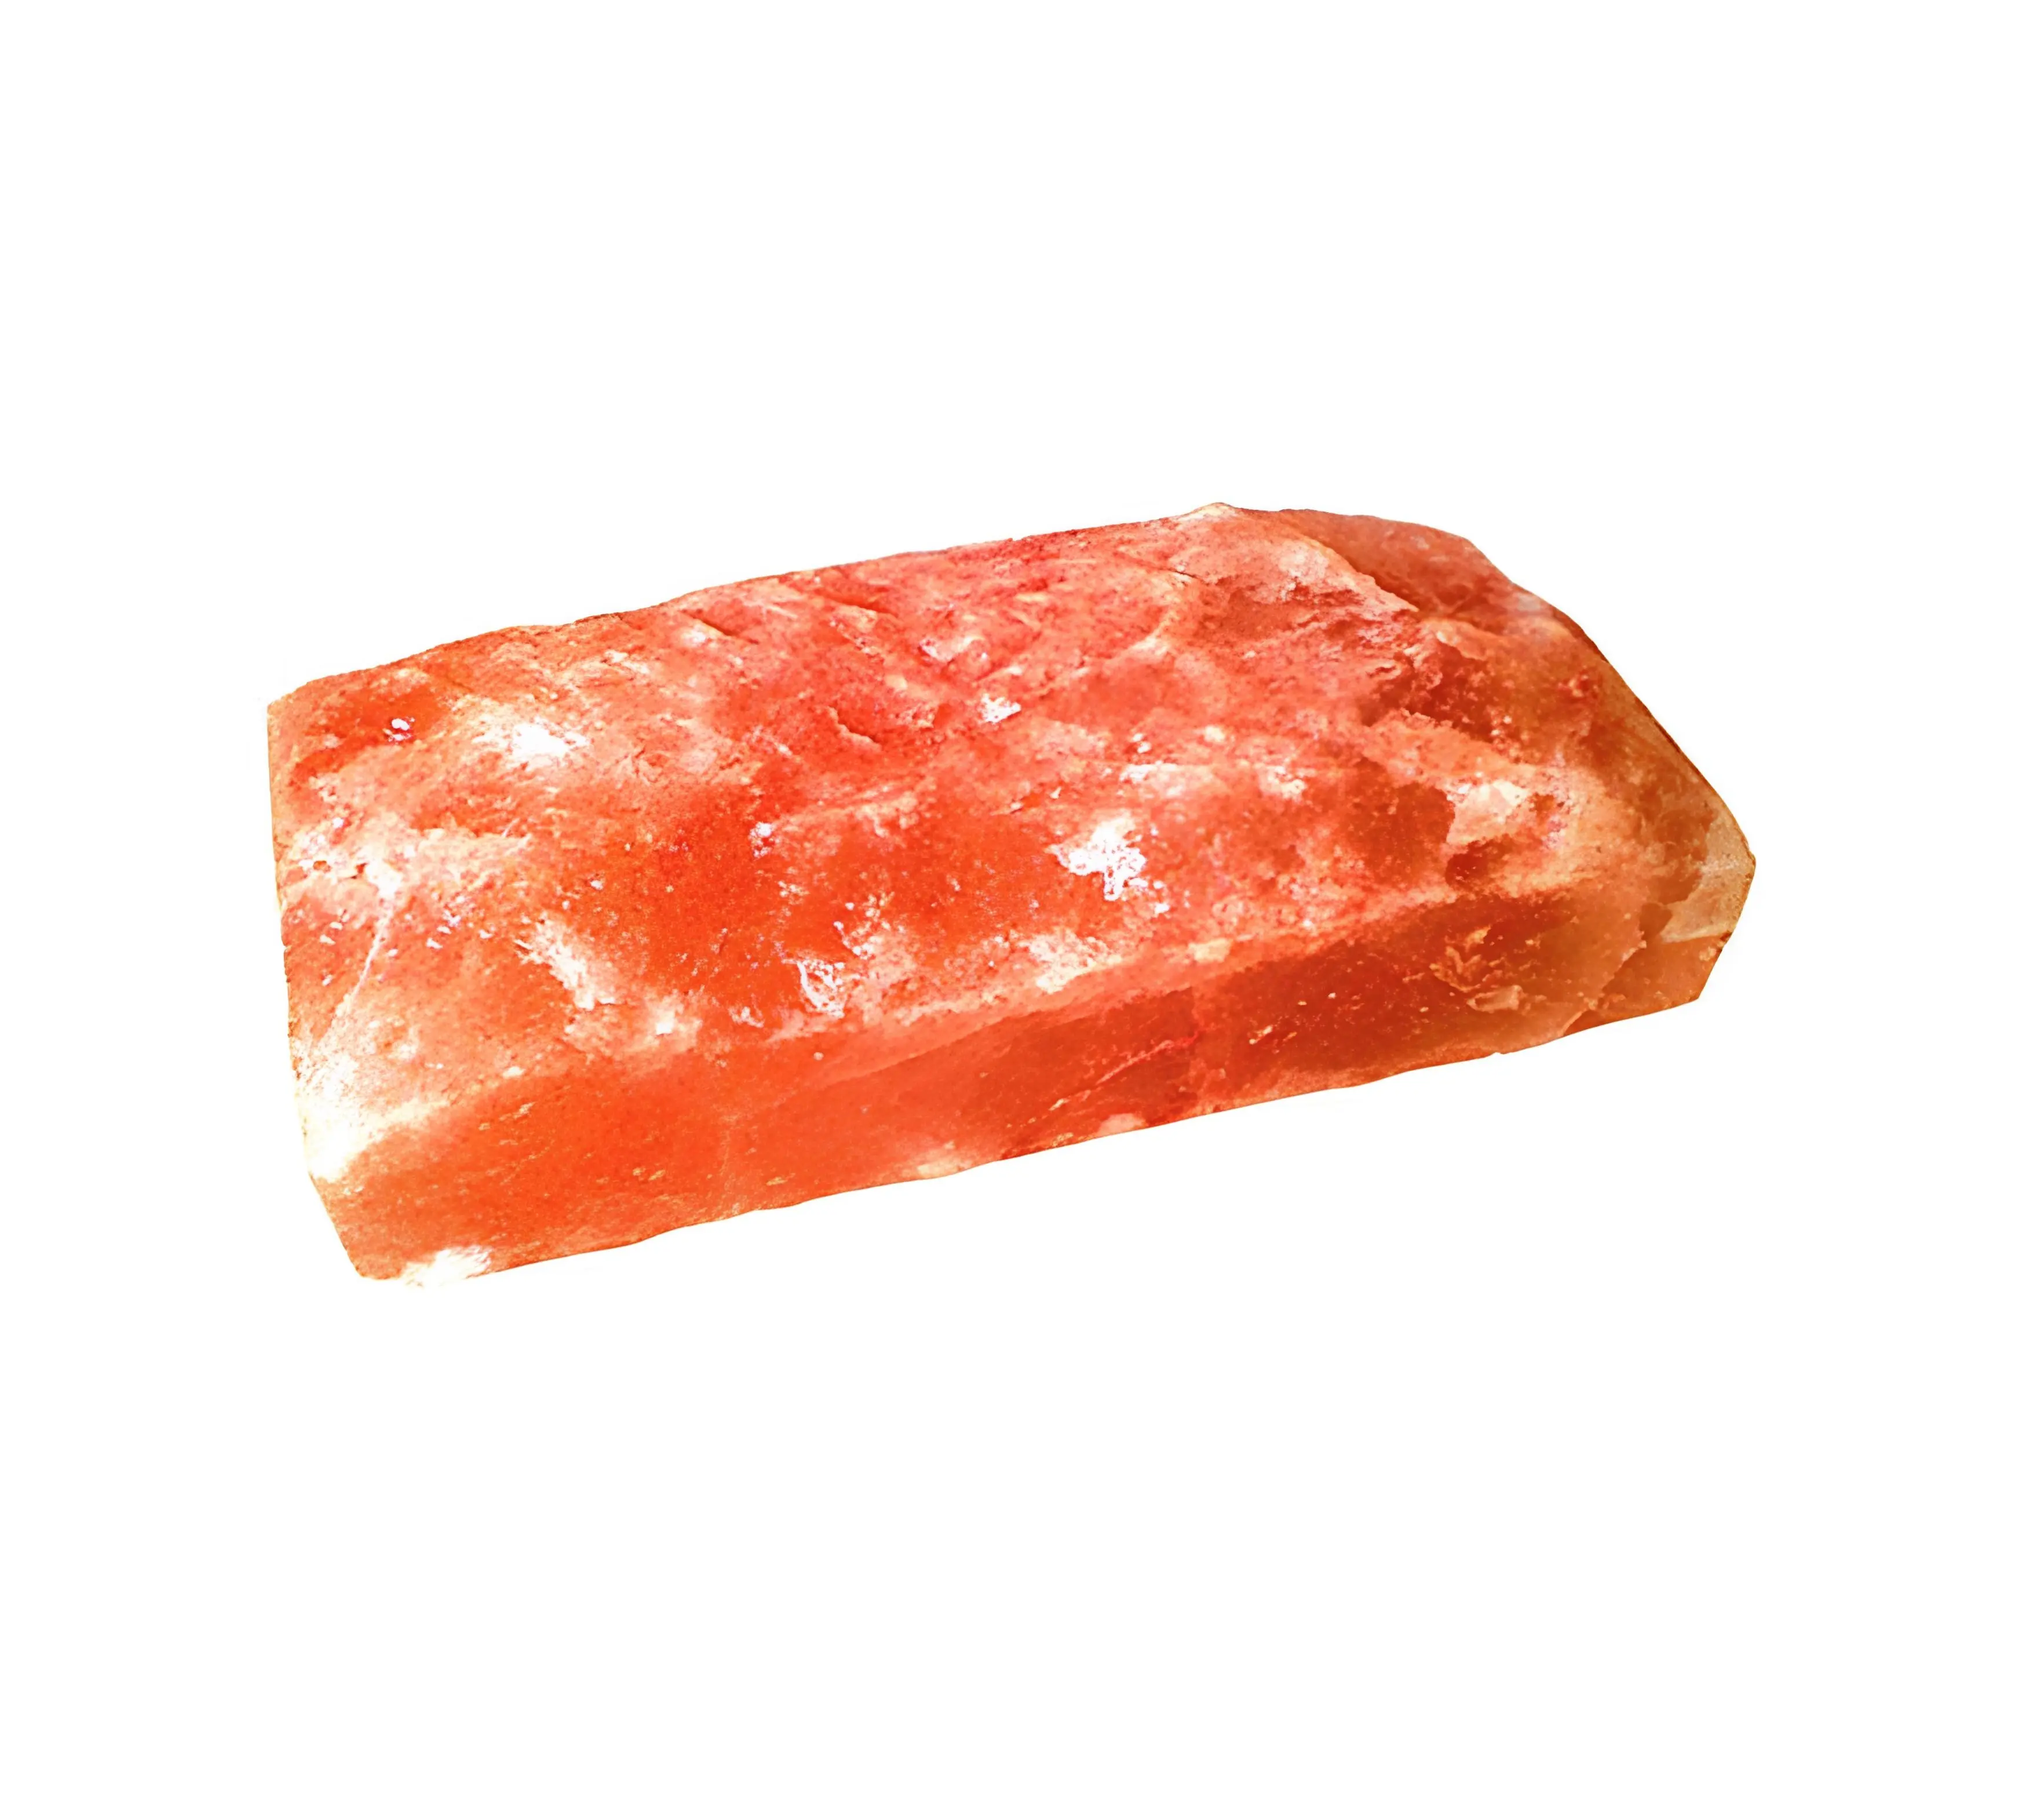 Tuiles/briques de sel gemme rose himalayen naturel pakistanais d'un côté de qualité supérieure 8 "x 4" x 2 "pour salle de sauna et thérapie SPA